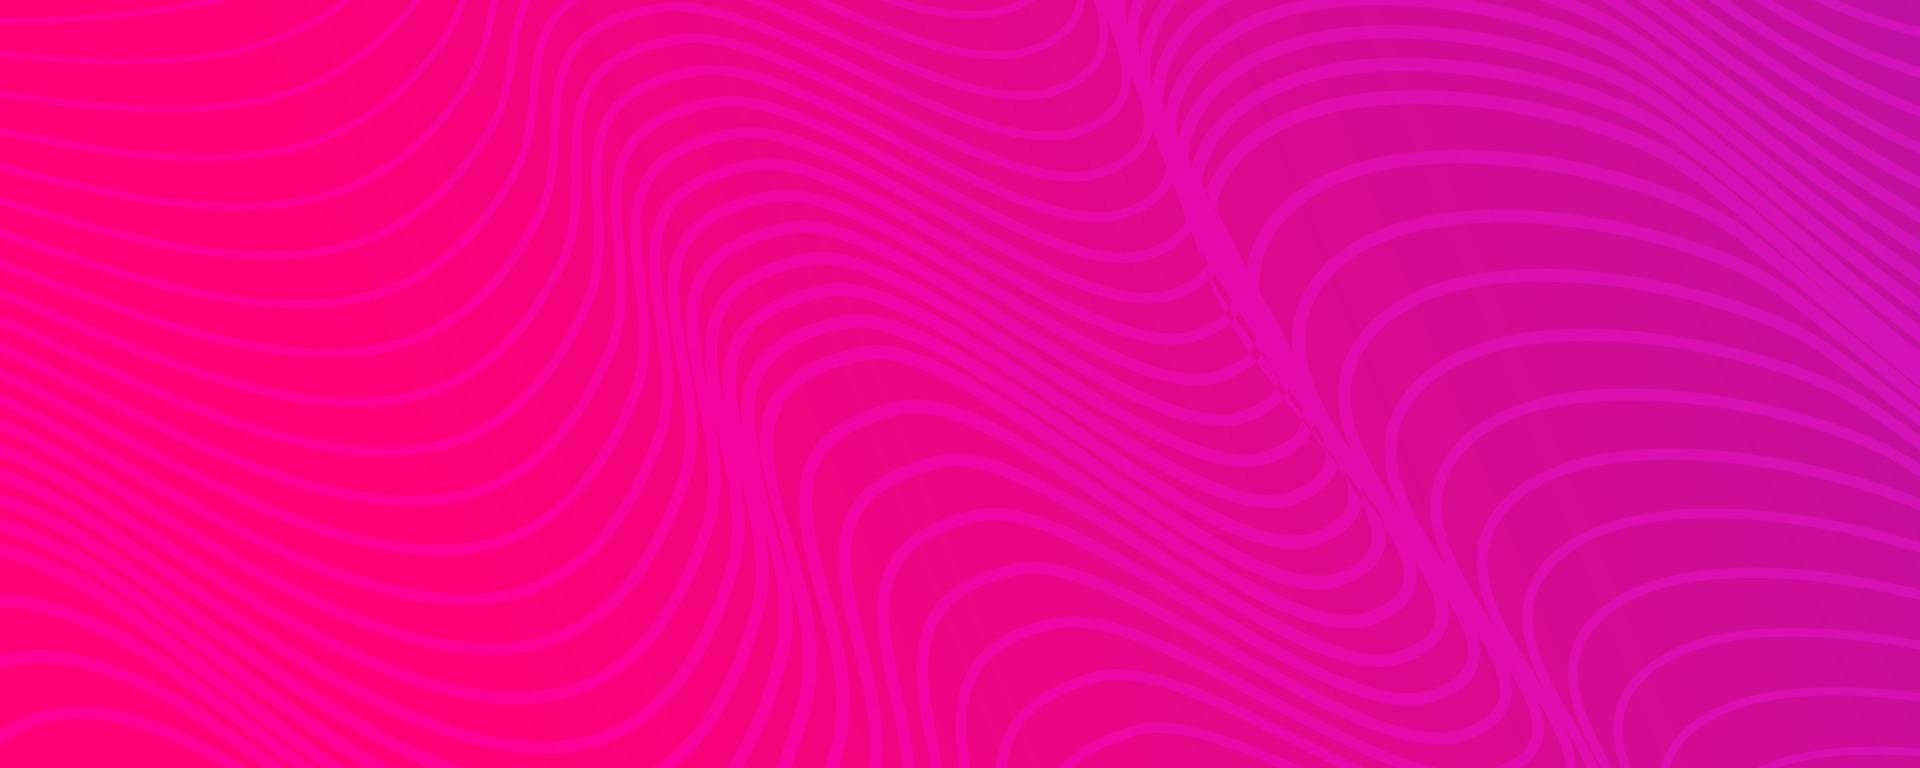 modern kleurrijk helling achtergrond met Golf lijnen. roze meetkundig abstract presentatie achtergrond. vector illustratie